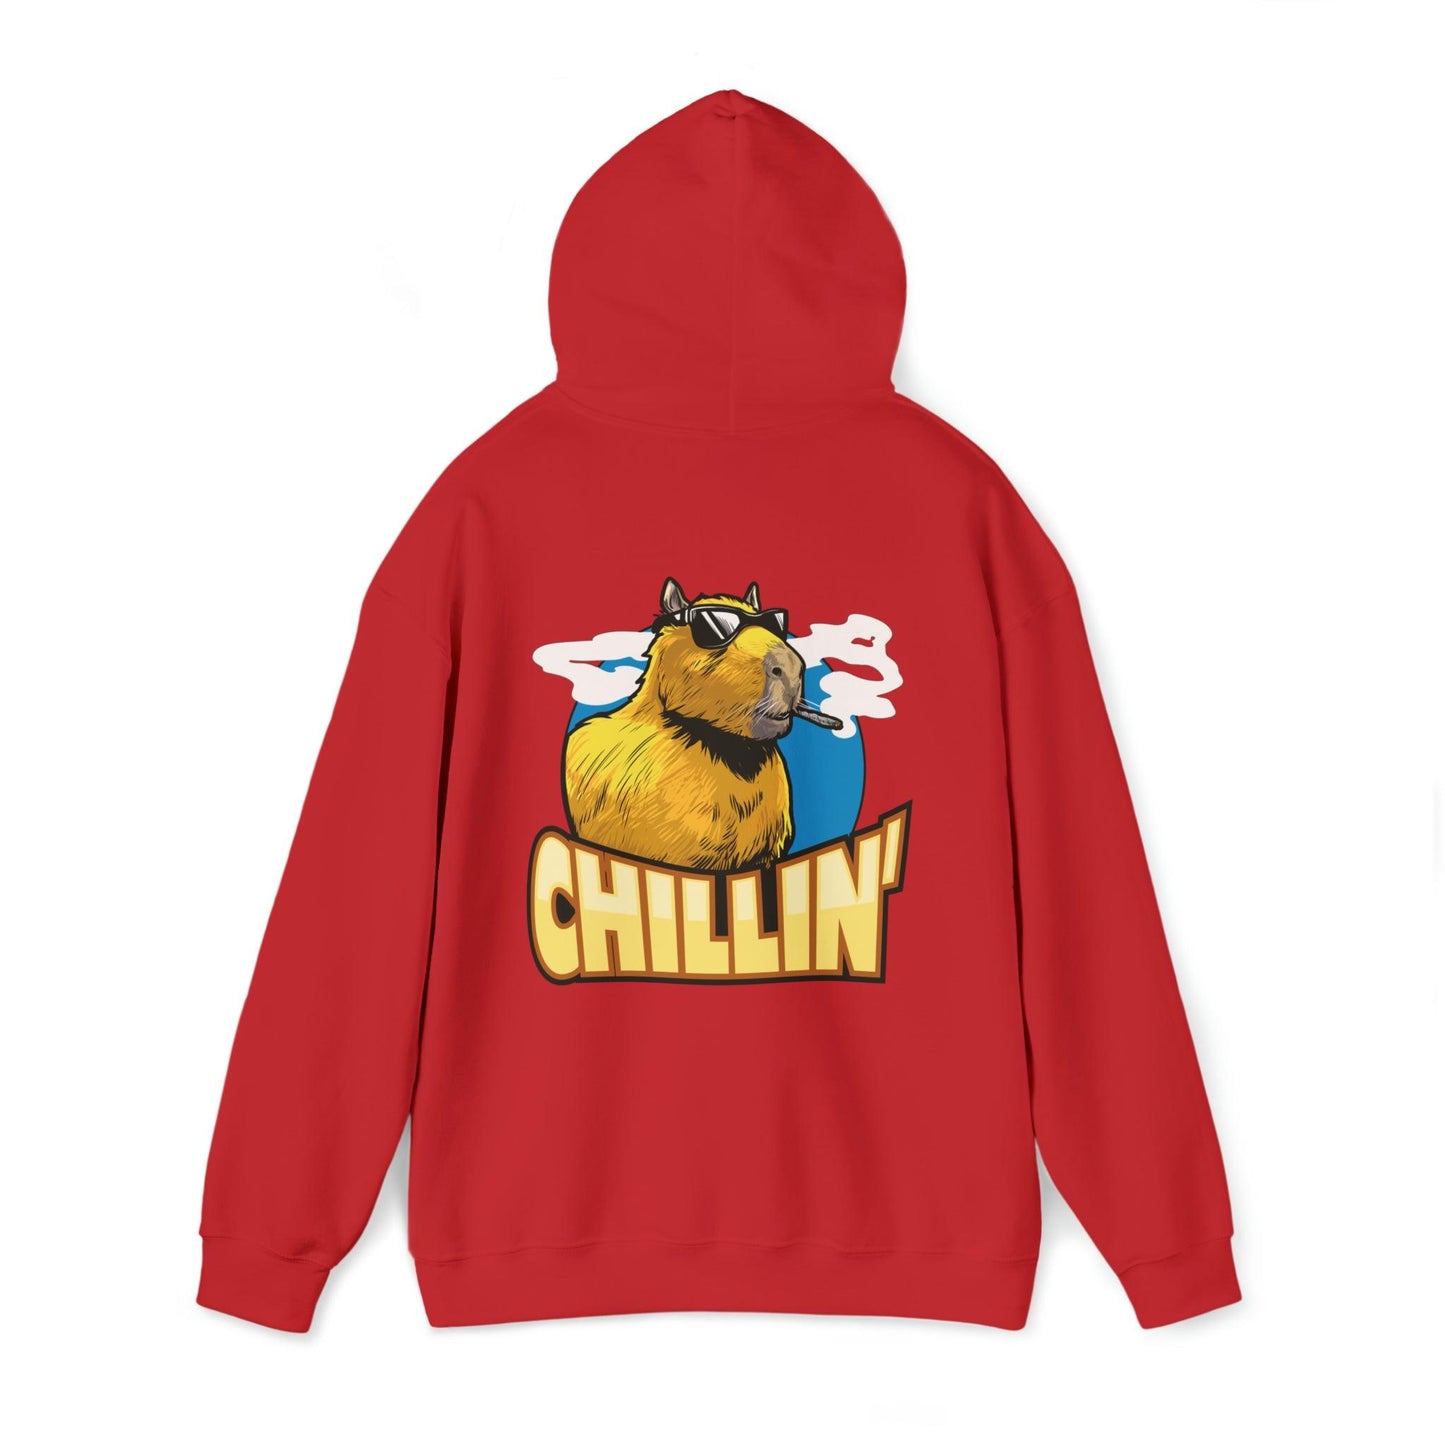 Capybara chillin - Unisex Heavy Blend Hooded Sweatshirt - Shaneinvasion